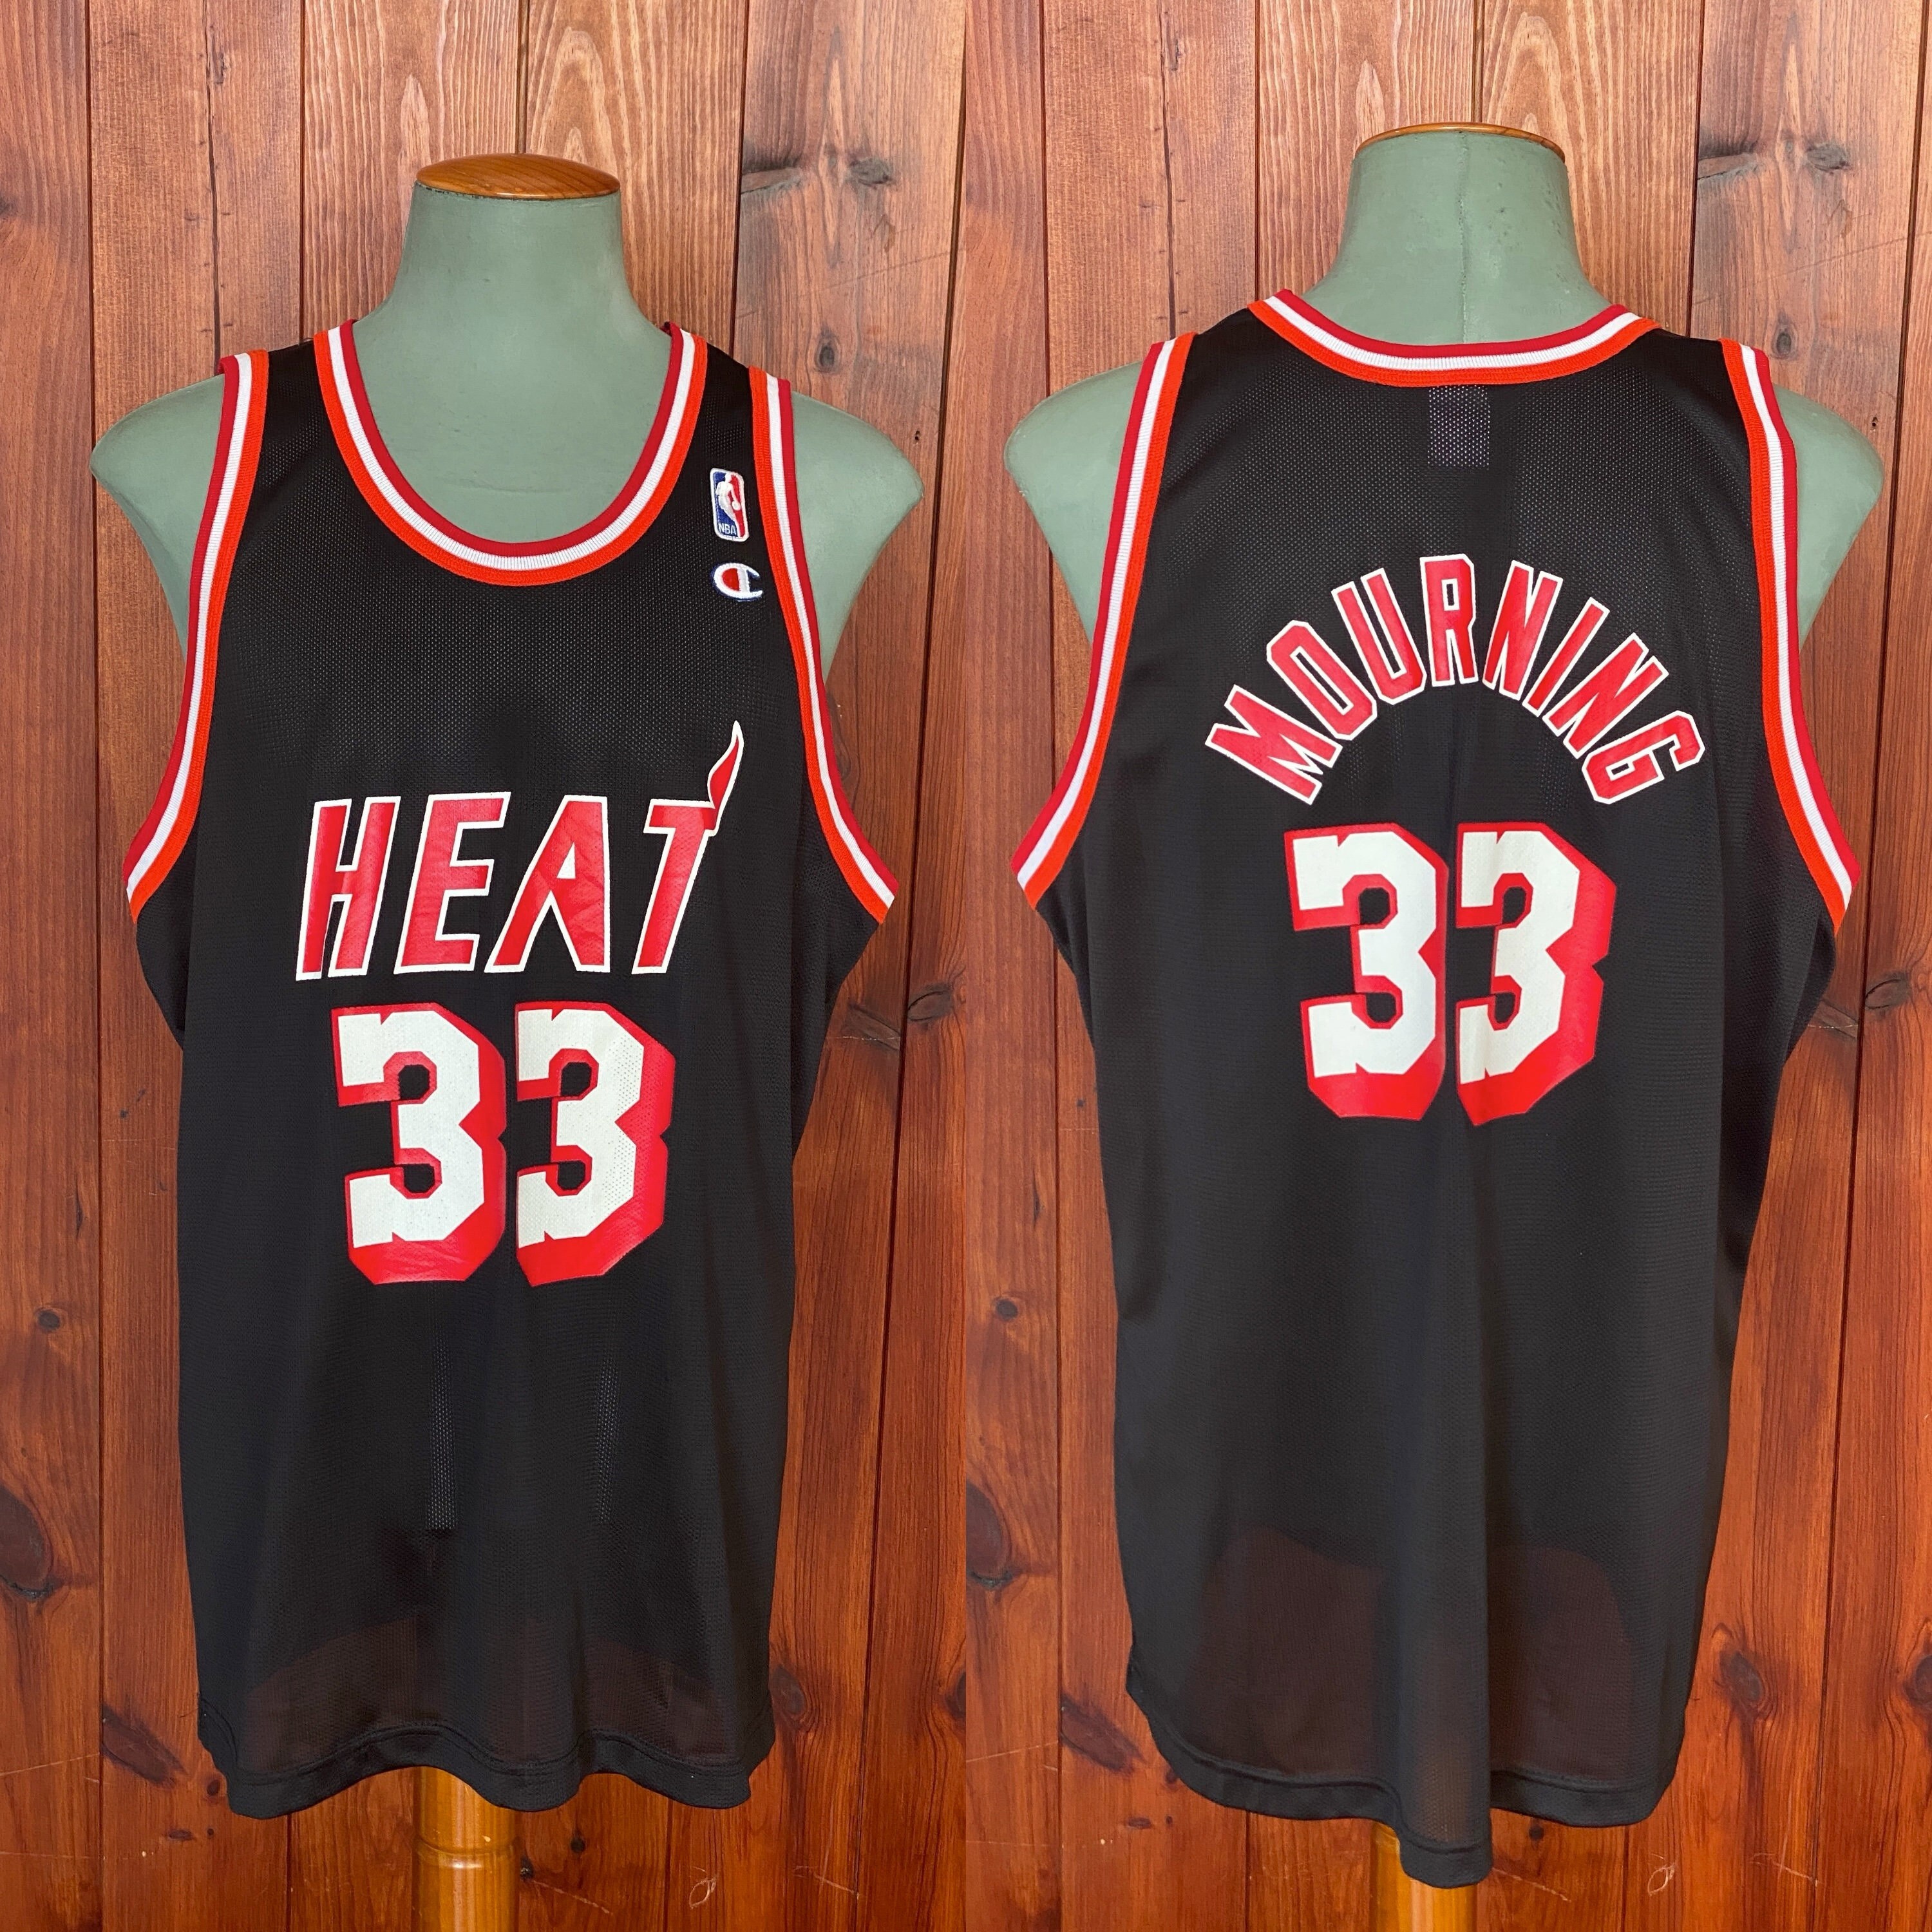 Vintage Miami Heat NBA Champion Jersey #32 Harold Miner SZ 40 Medium 90s